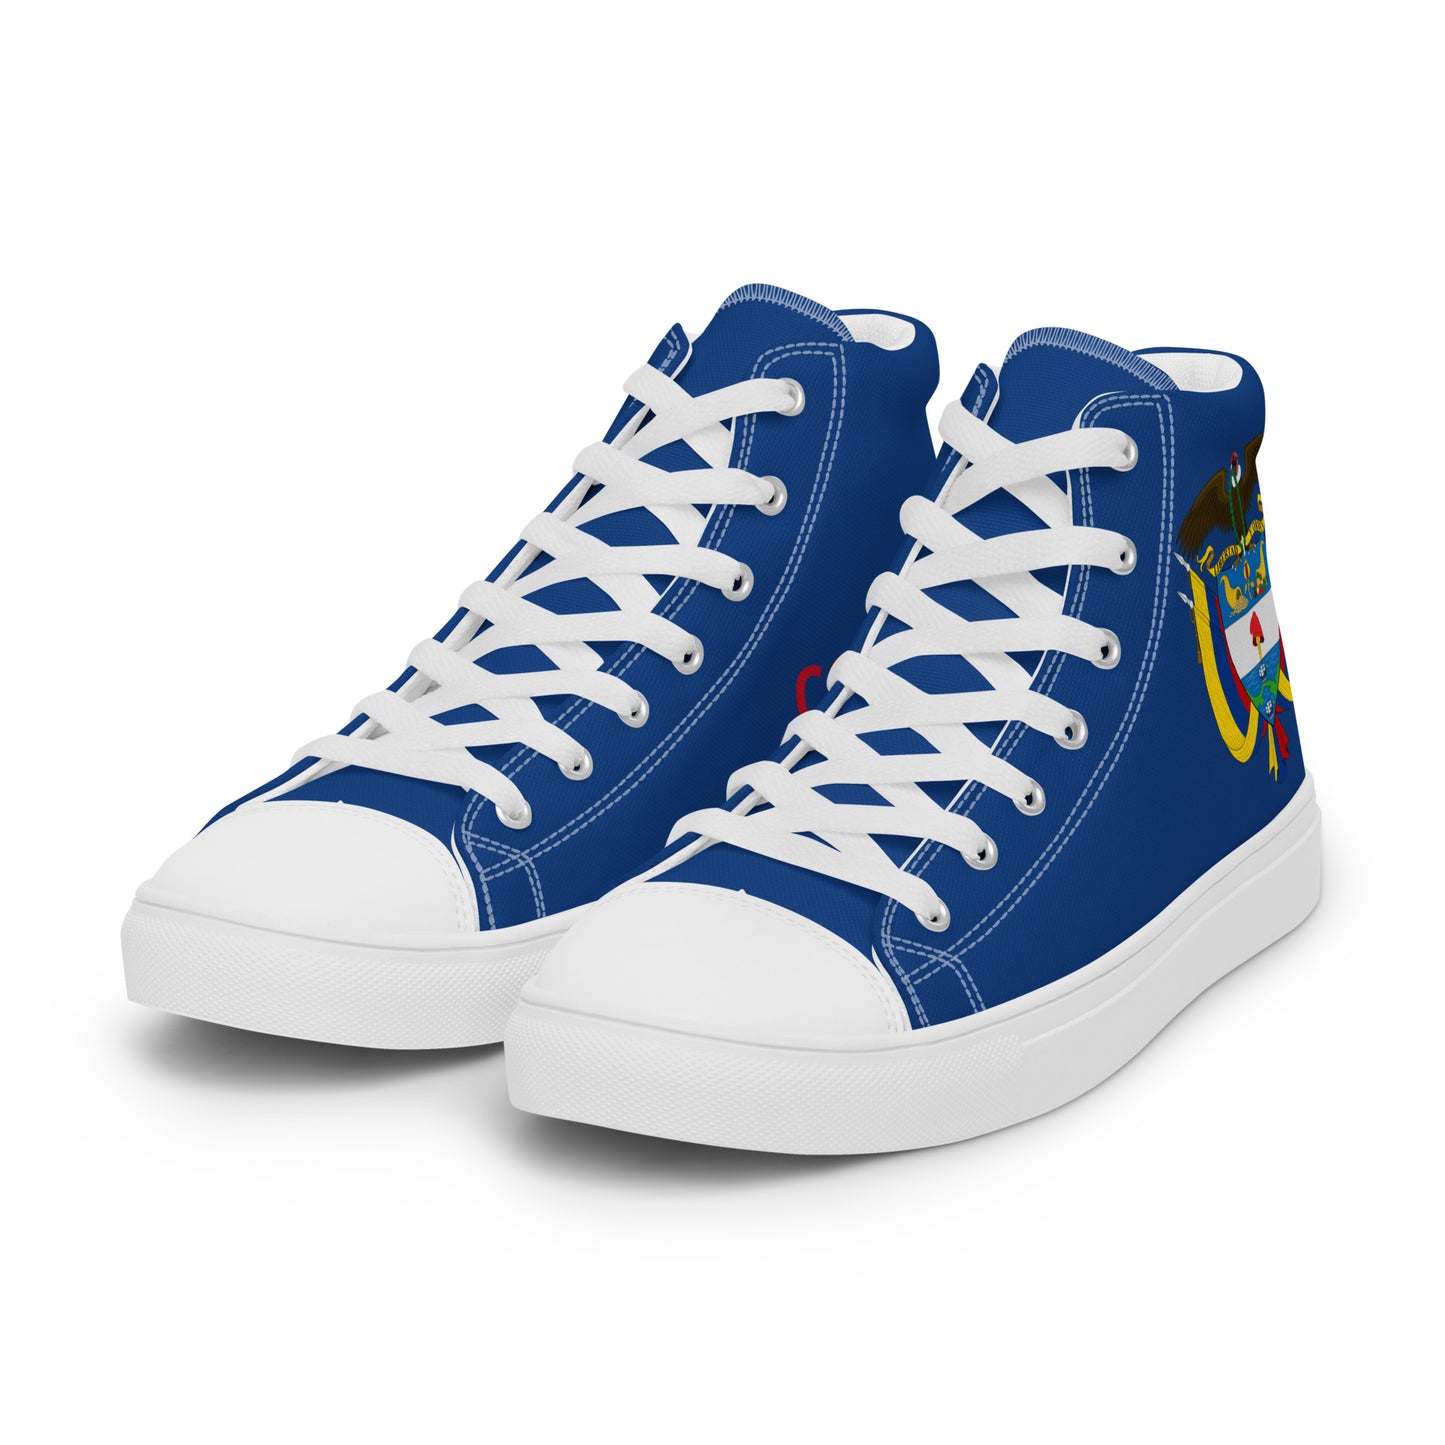 Colombia - Hombre - Azul - Zapatos High top